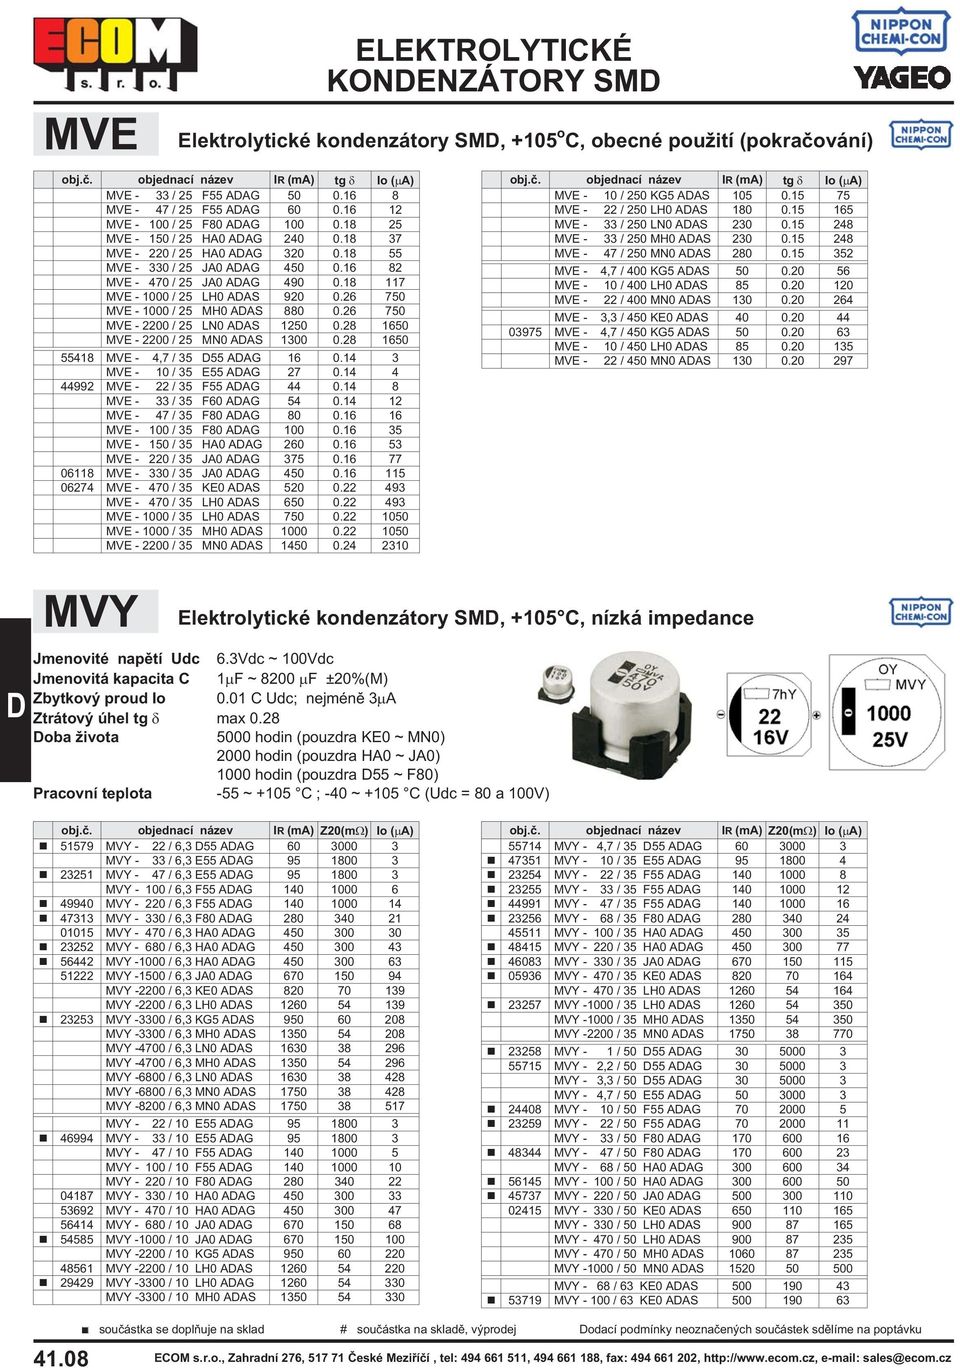 26 750 MVE - 1000 / 25 MH0 AAS 880 0.26 750 MVE - 2200 / 25 LN0 AAS 1250 0.28 1650 MVE - 2200 / 25 MN0 AAS 1300 0.28 1650 55418 MVE - 4,7 / 35 55 AAG 16 0.14 3 MVE - 10 / 35 E55 AAG 27 0.